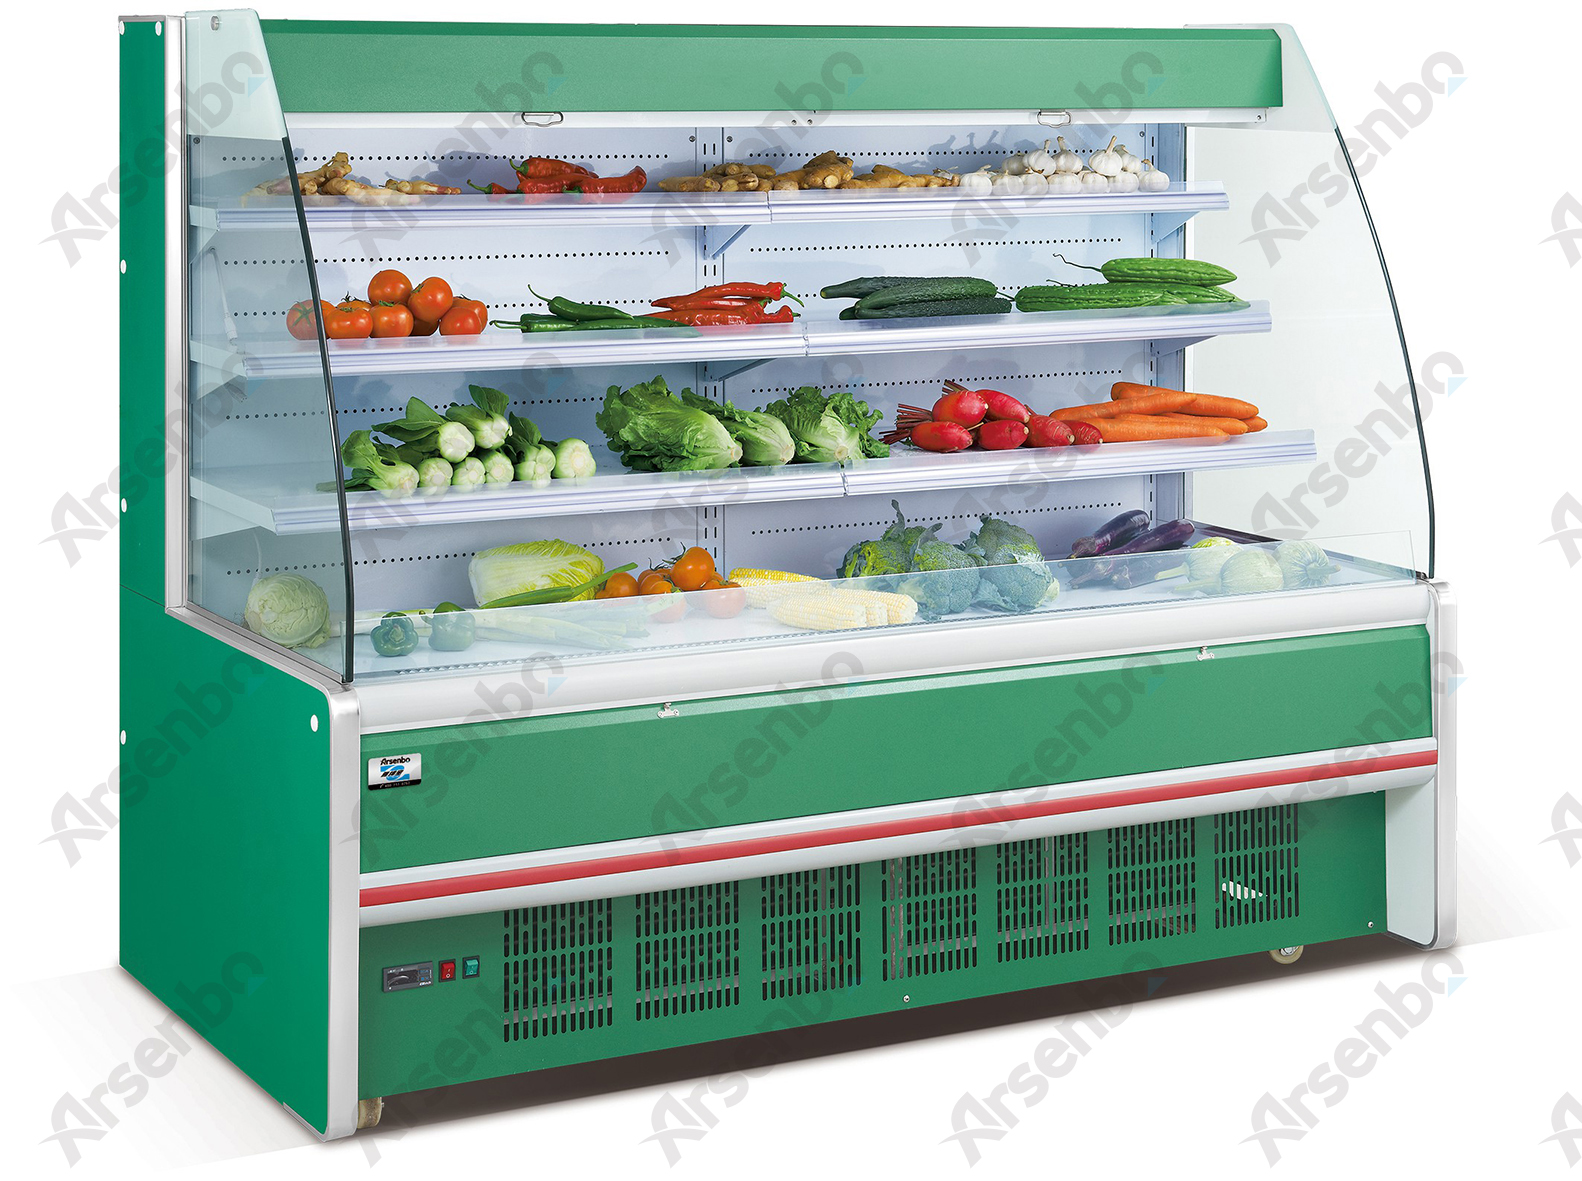 供应雅绅宝2.5米水果展示柜 水果保鲜柜 节能环保超市展示柜 立式保鲜展示柜 厂家直销